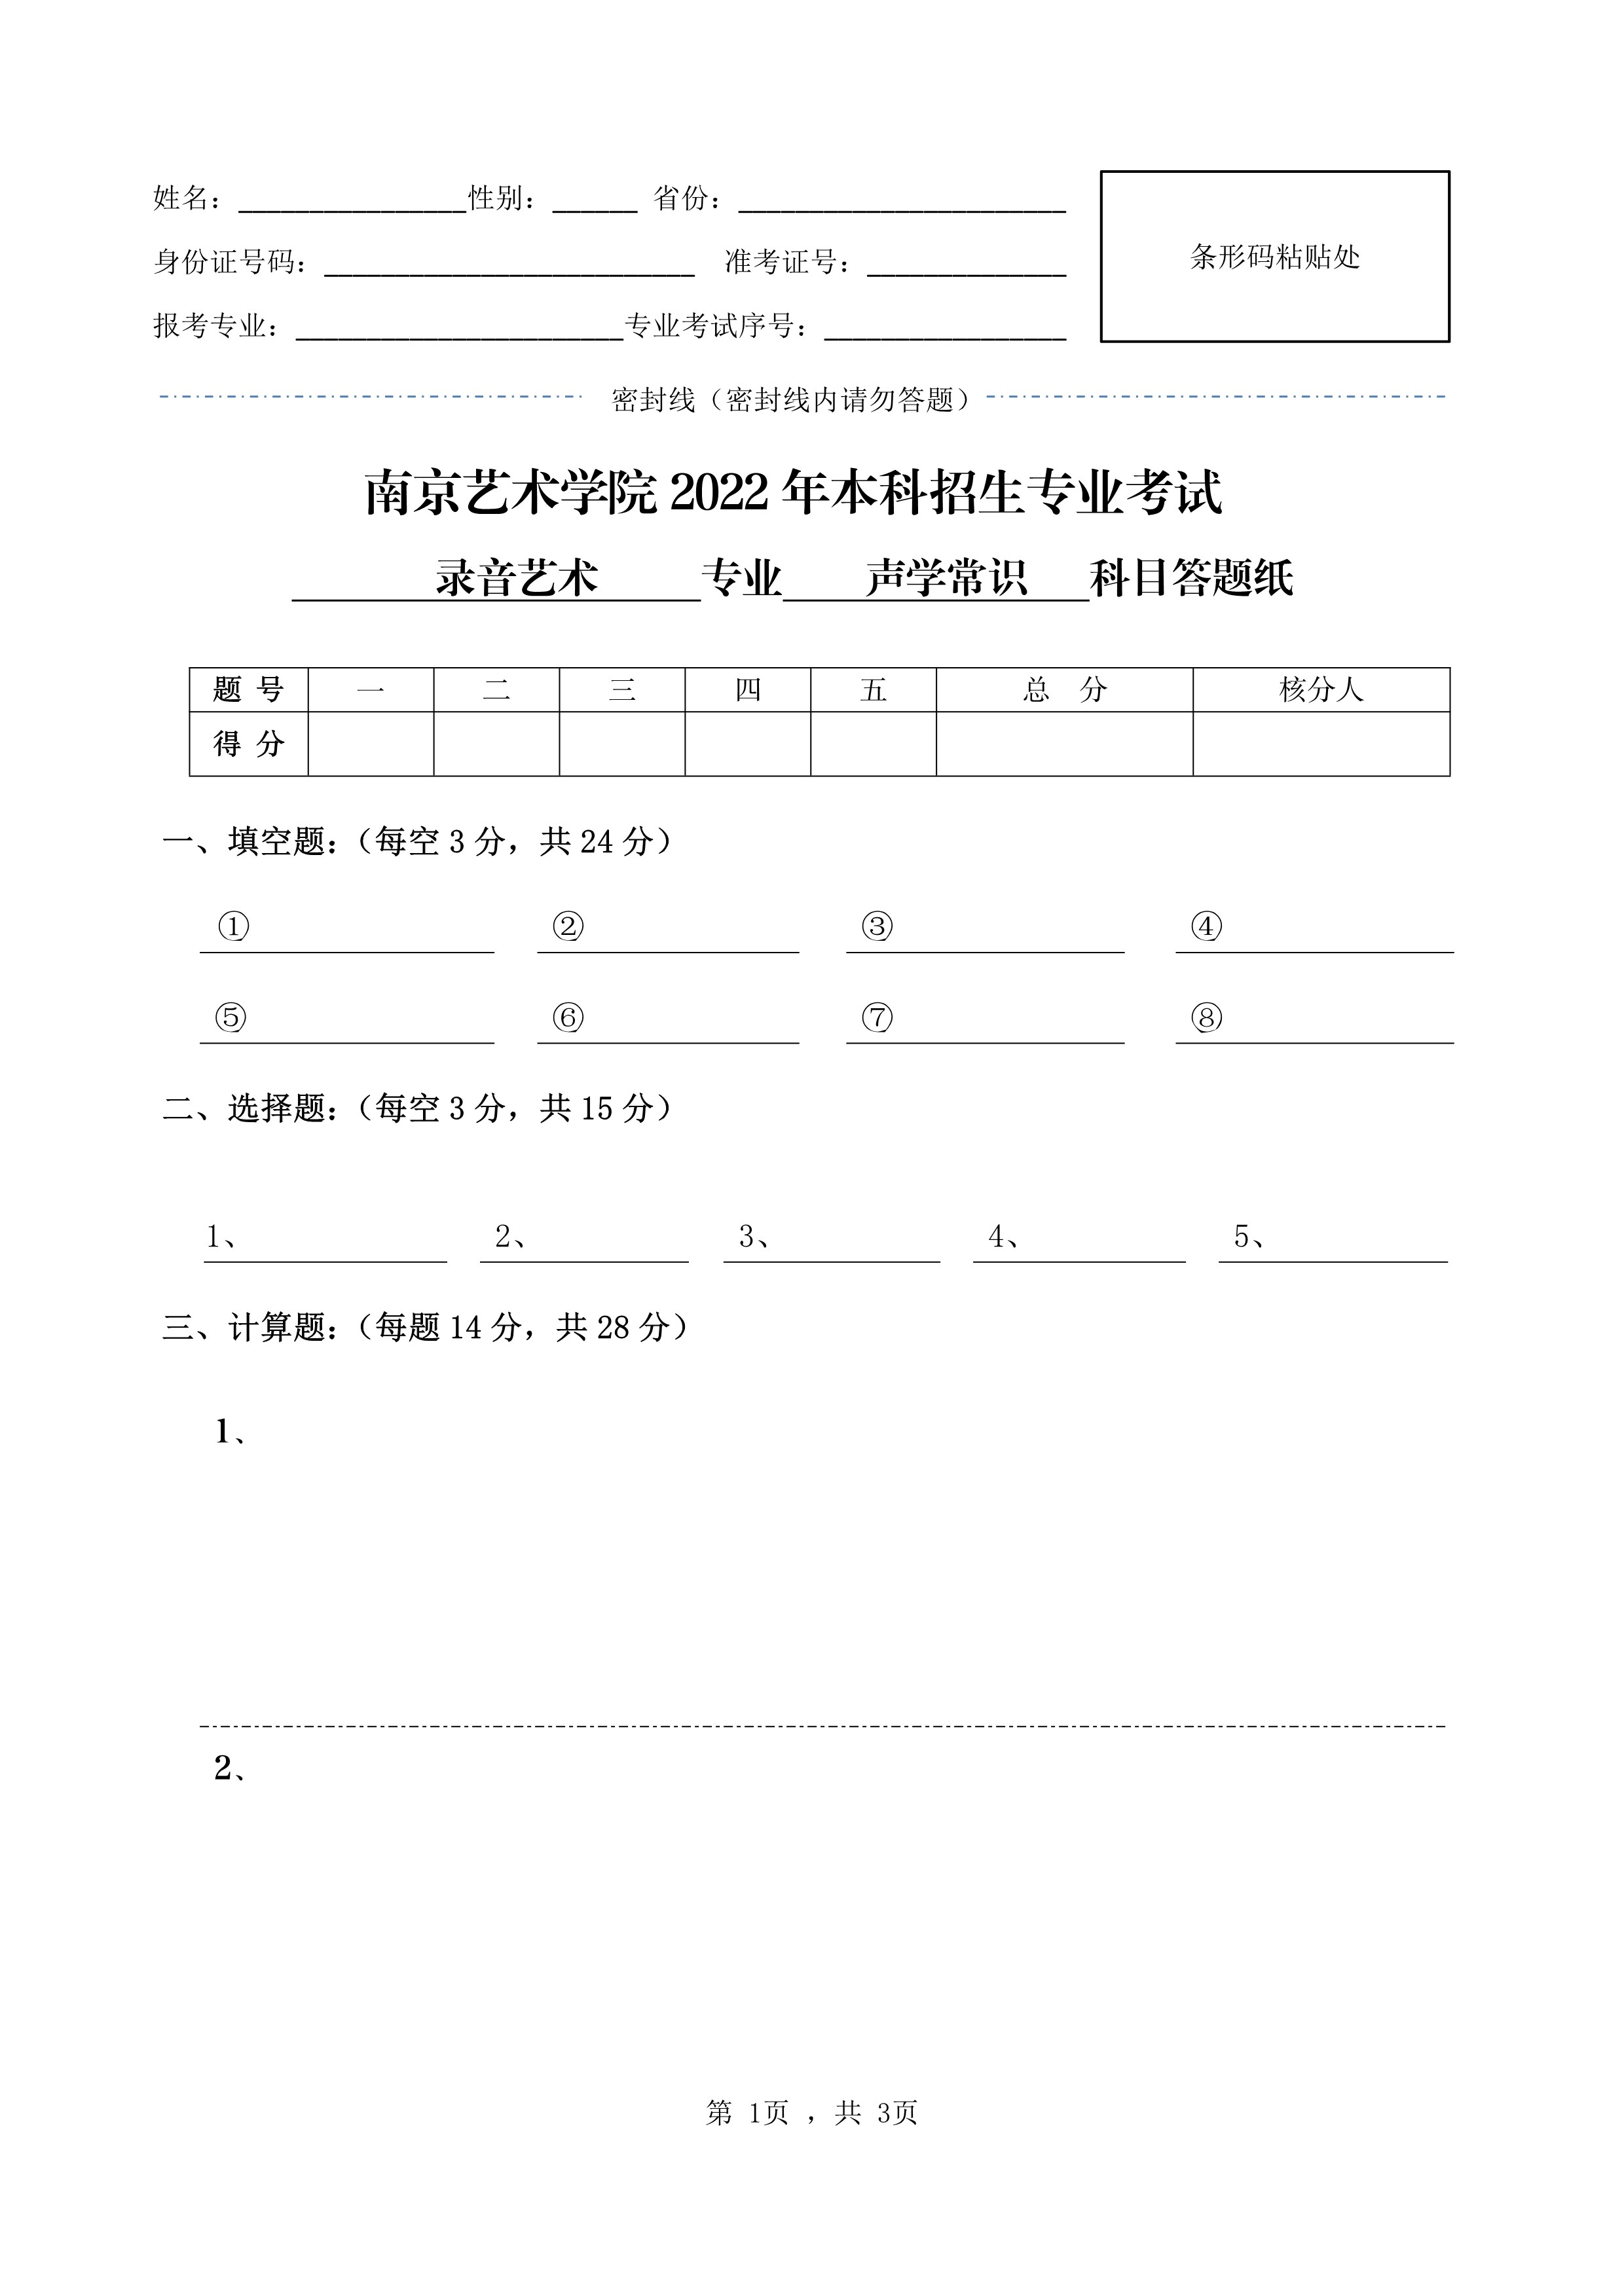 南京艺术学院2022年本科招生录音艺术专业《声学常识》科目考试答题纸及草稿纸_1.jpg